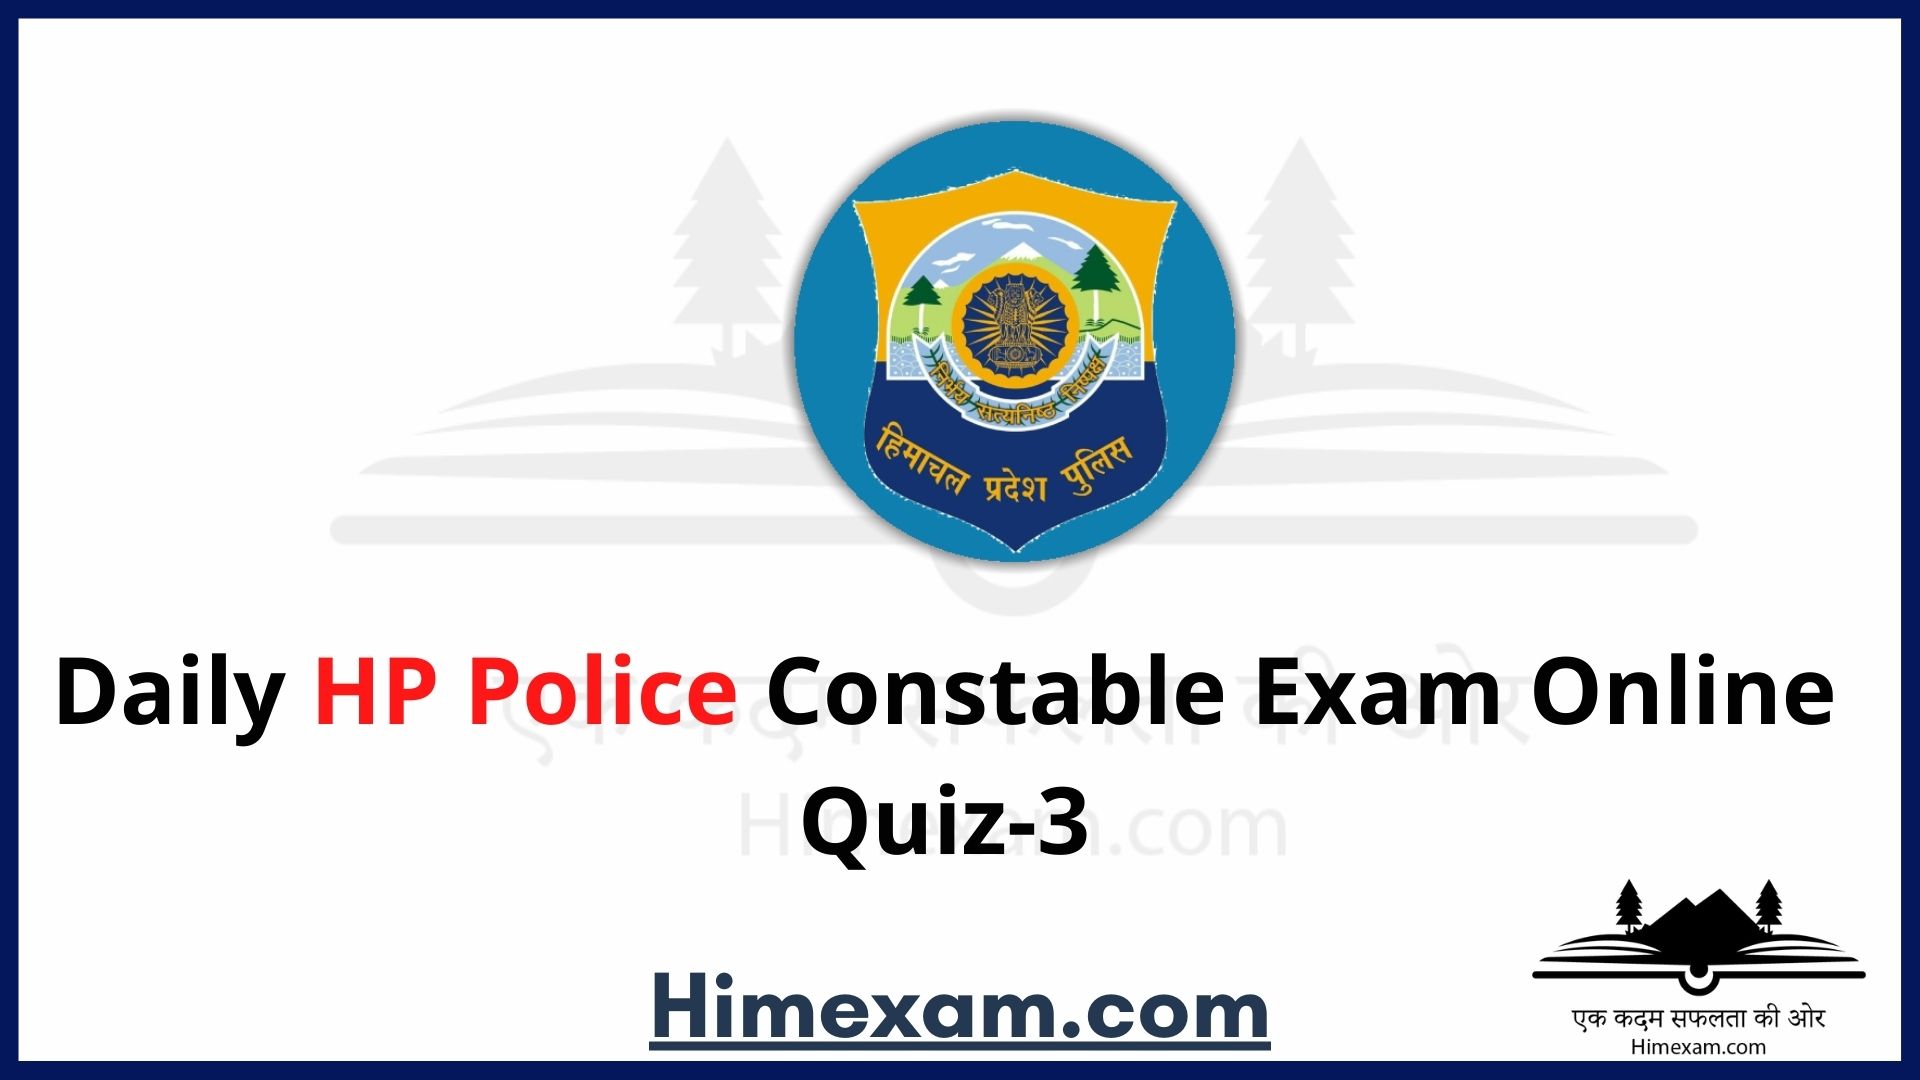 Daily HP Police Constable Exam Online Quiz-3